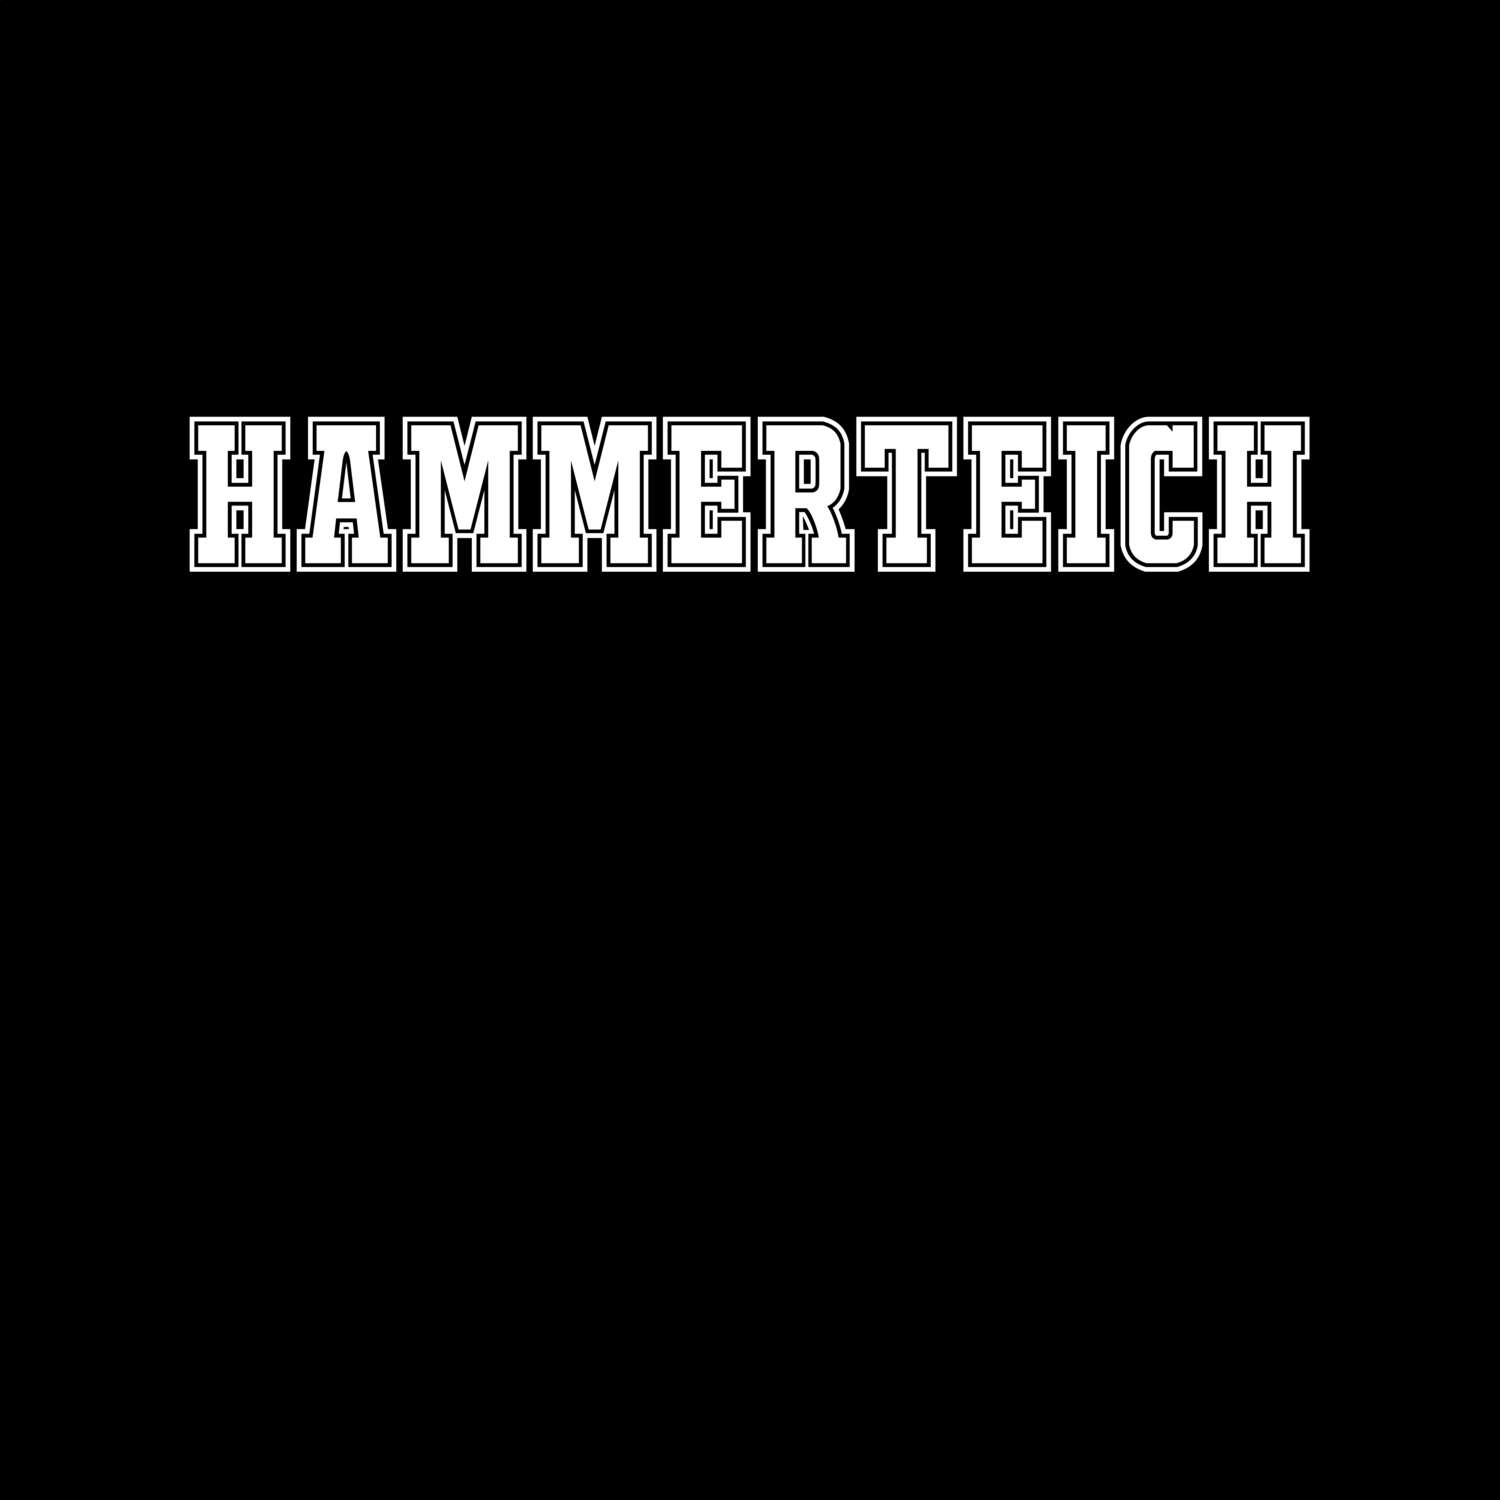 Hammerteich T-Shirt »Classic«